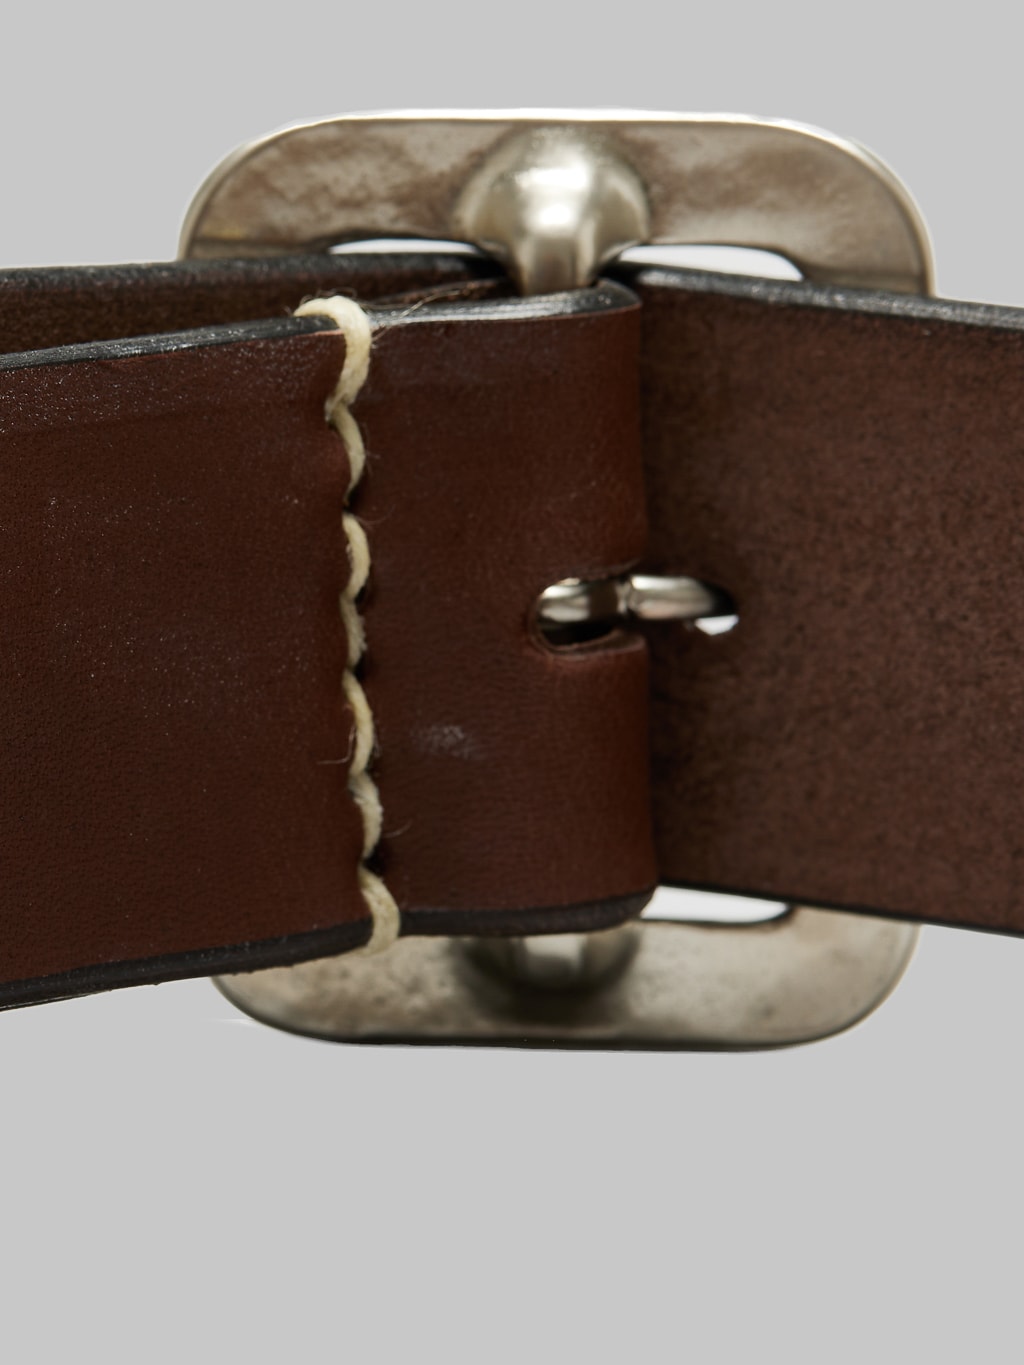 Sugar Cane leather garrison belt brown stitching detail